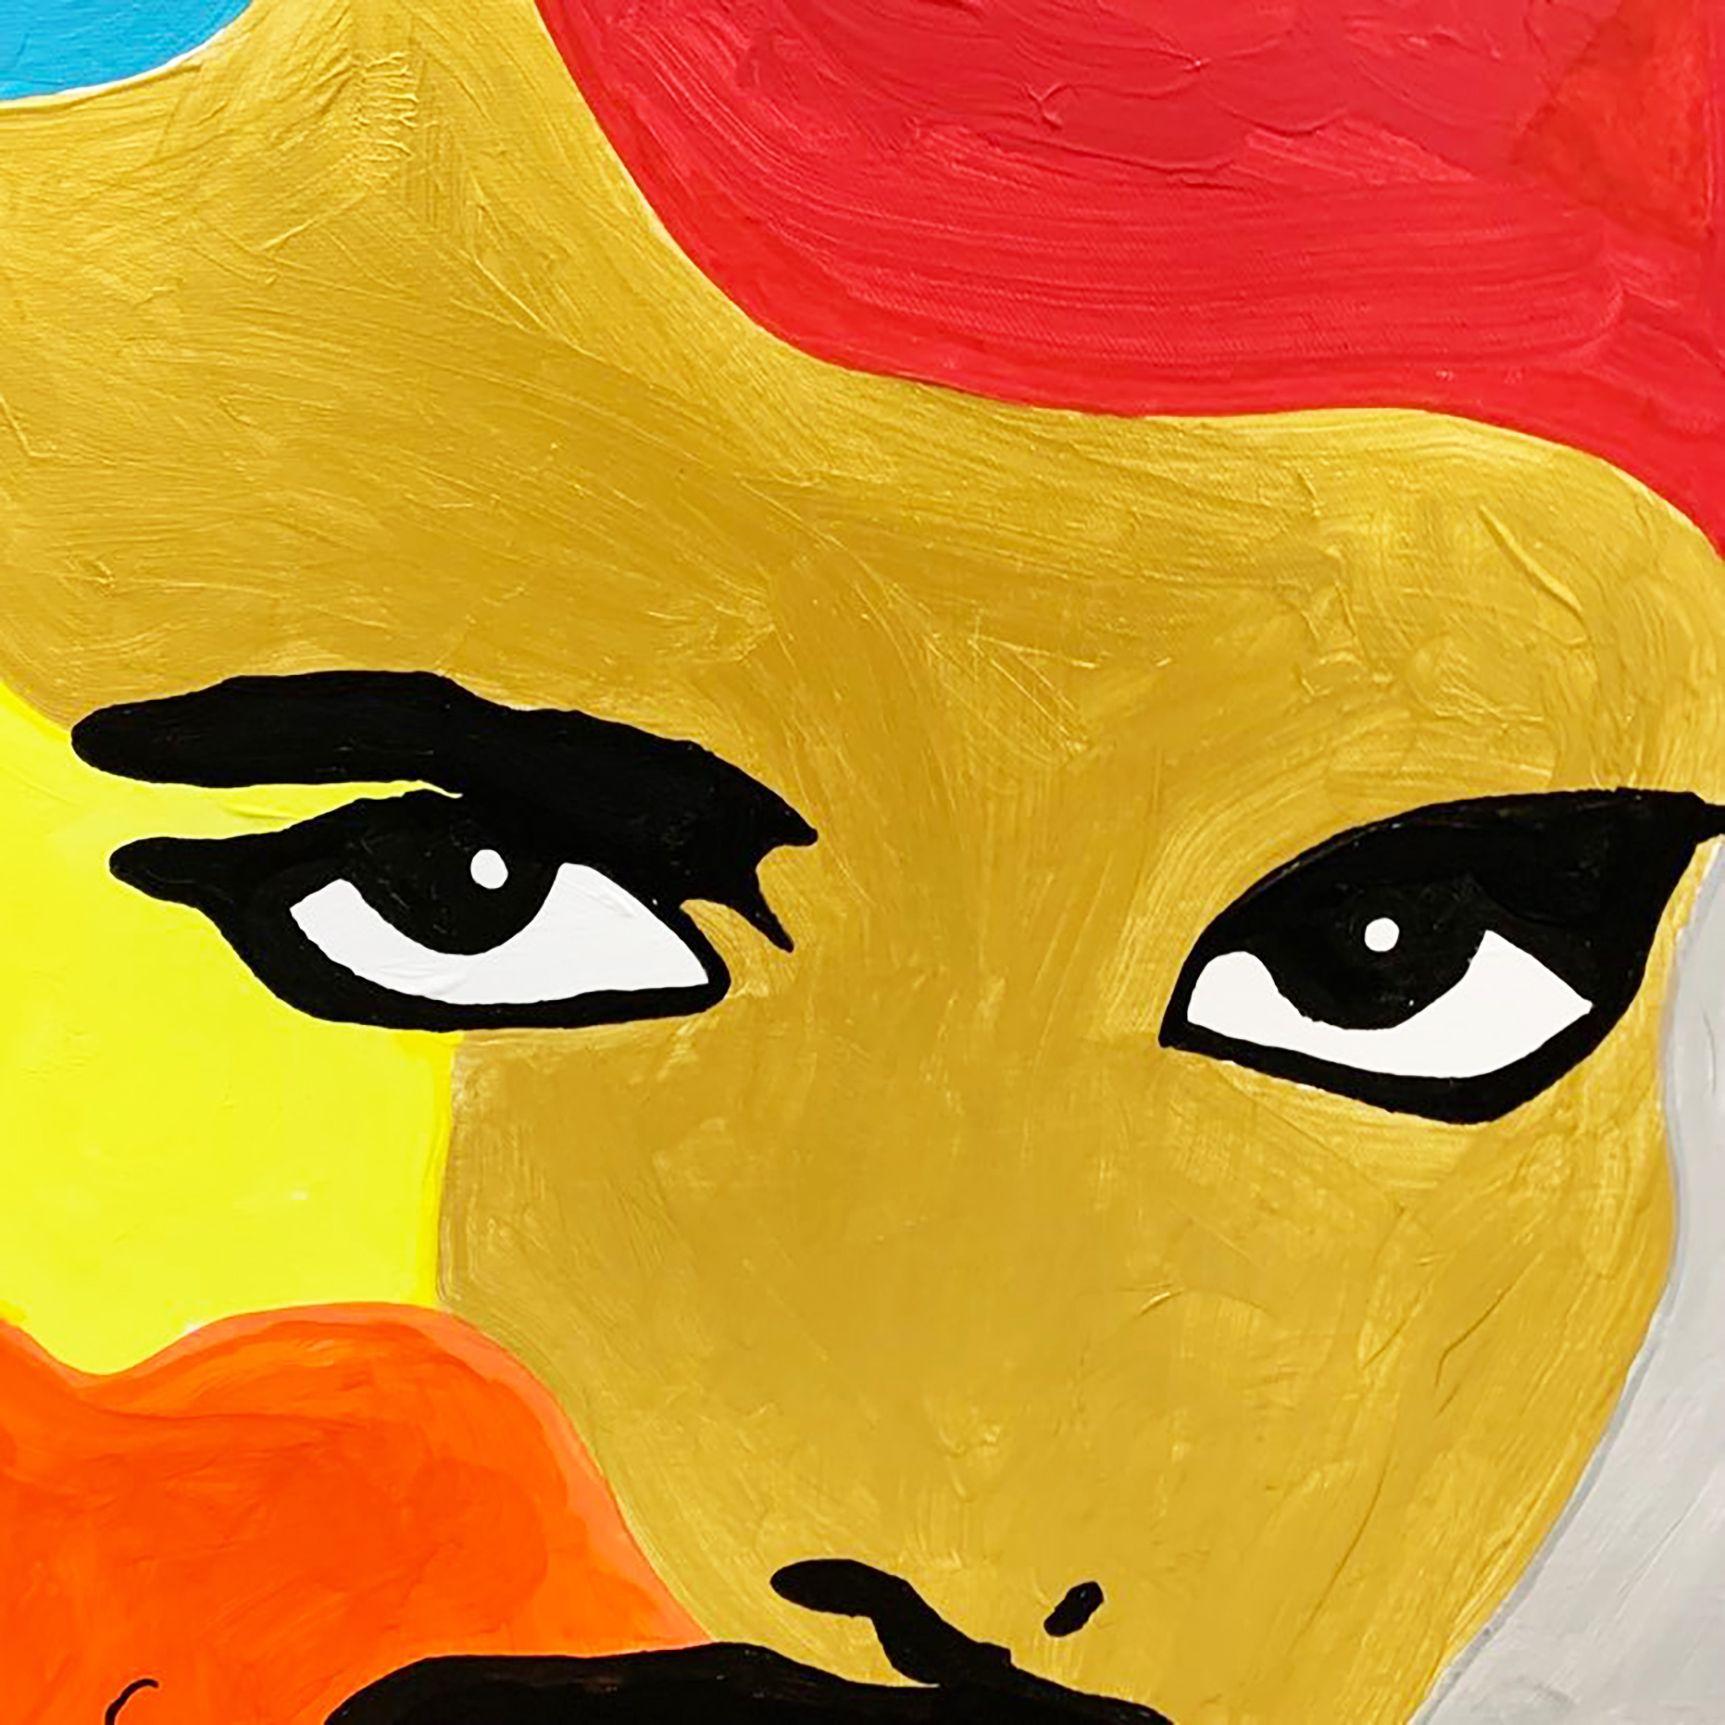 Freddie Mercury, Frontmann der Rockband QUEEN.    Acryl und Öl auf Leinwand.    30in x 30in (76cm x 76cm) :: Gemälde :: Pop-Art :: Dieses Werk wird mit einem offiziellen, vom Künstler unterzeichneten Echtheitszertifikat geliefert :: Bereit zum